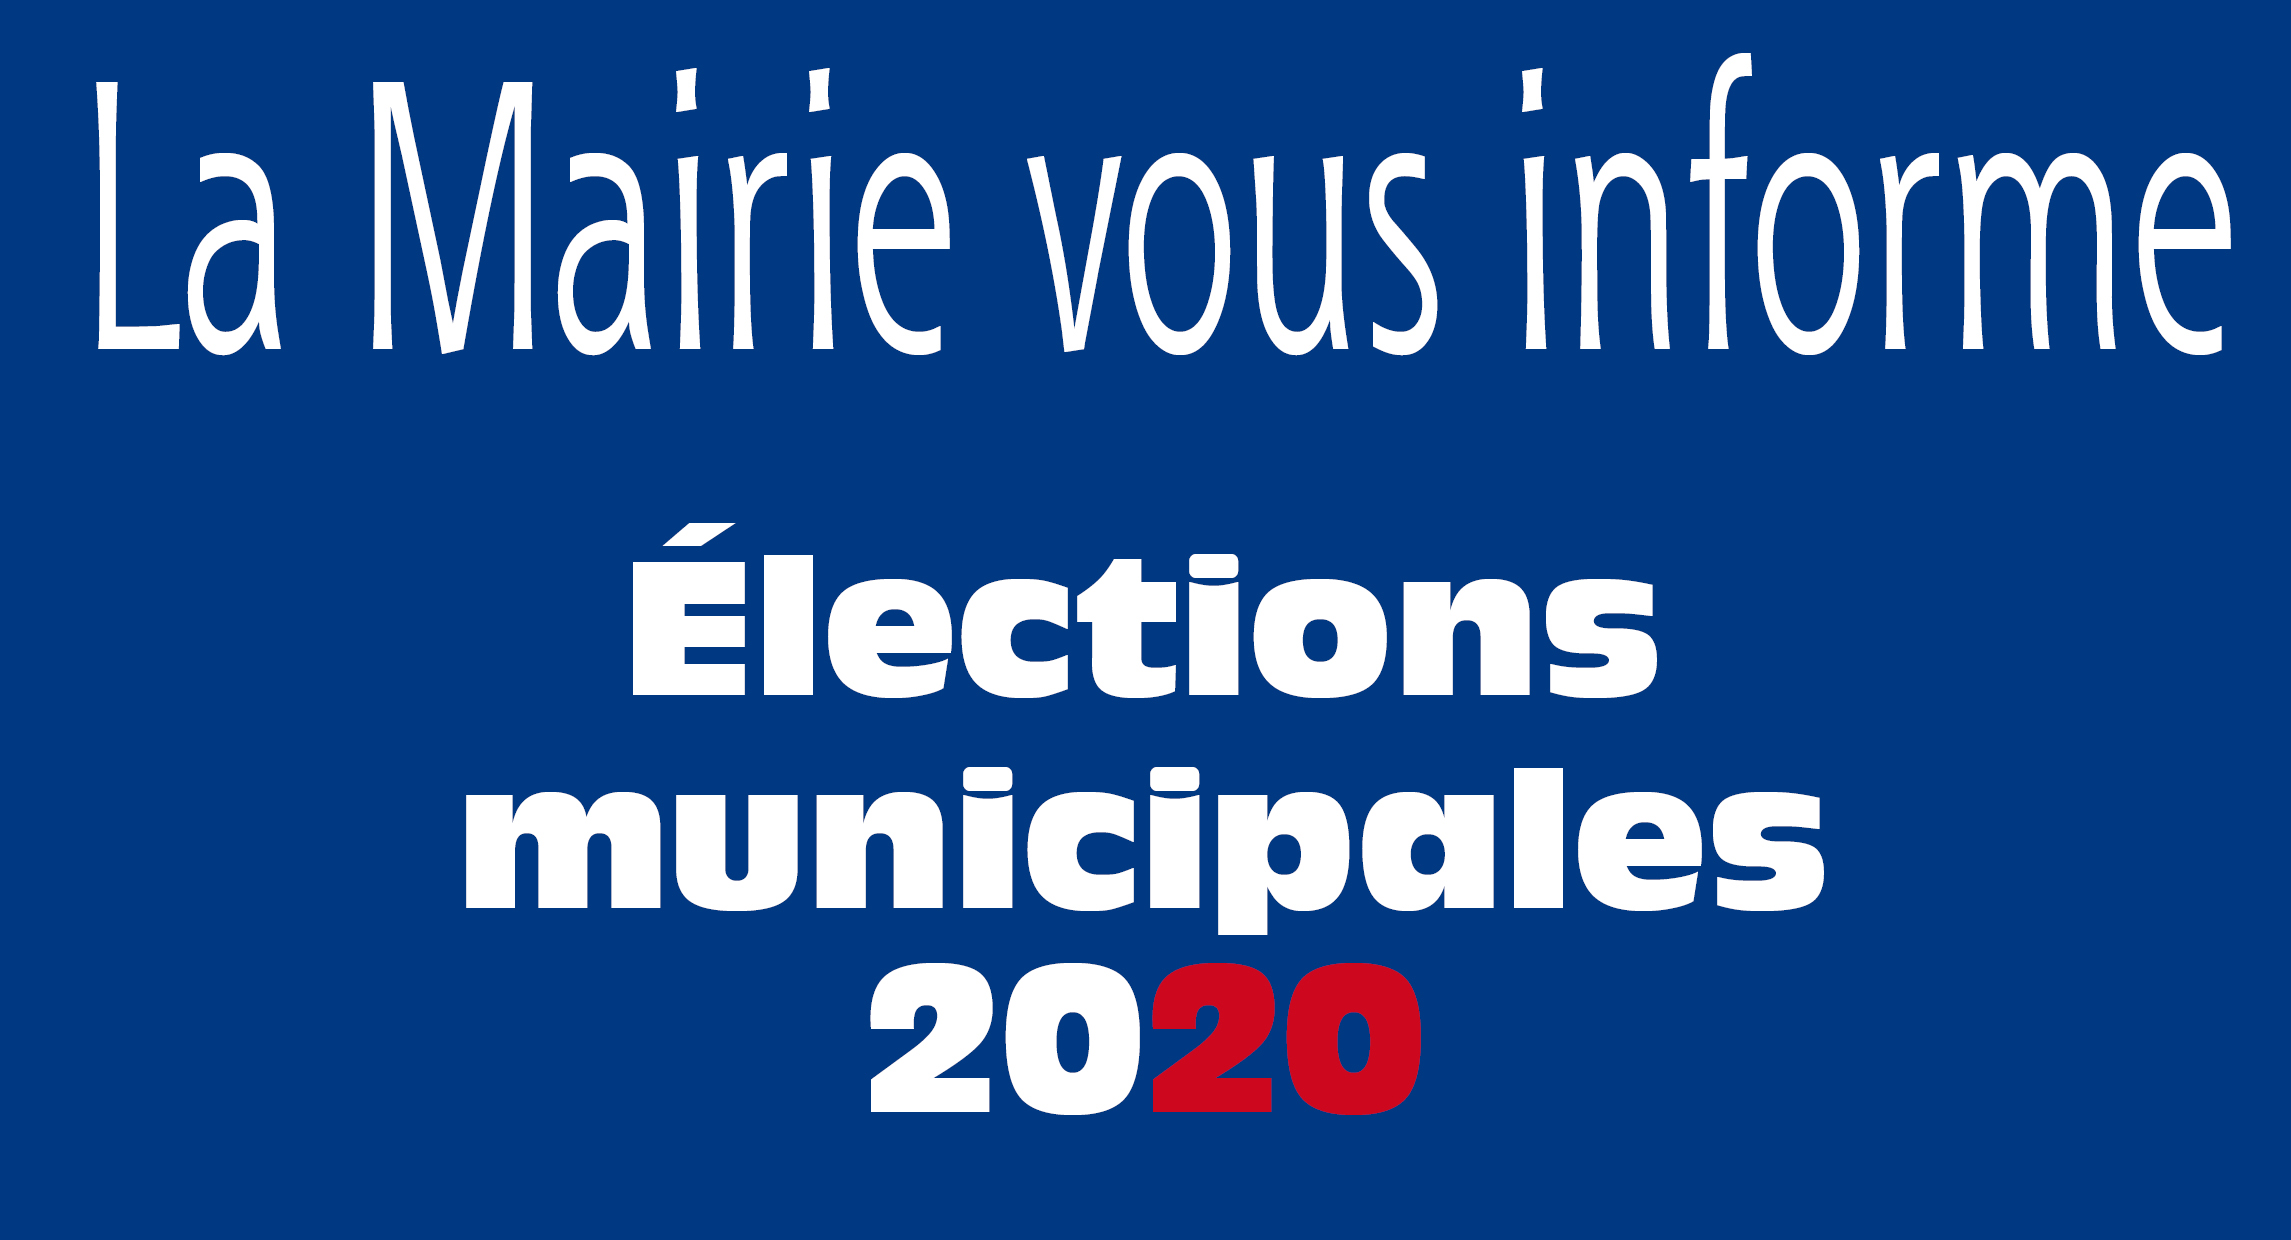 La Mairie vous informe Elections municipales 2020